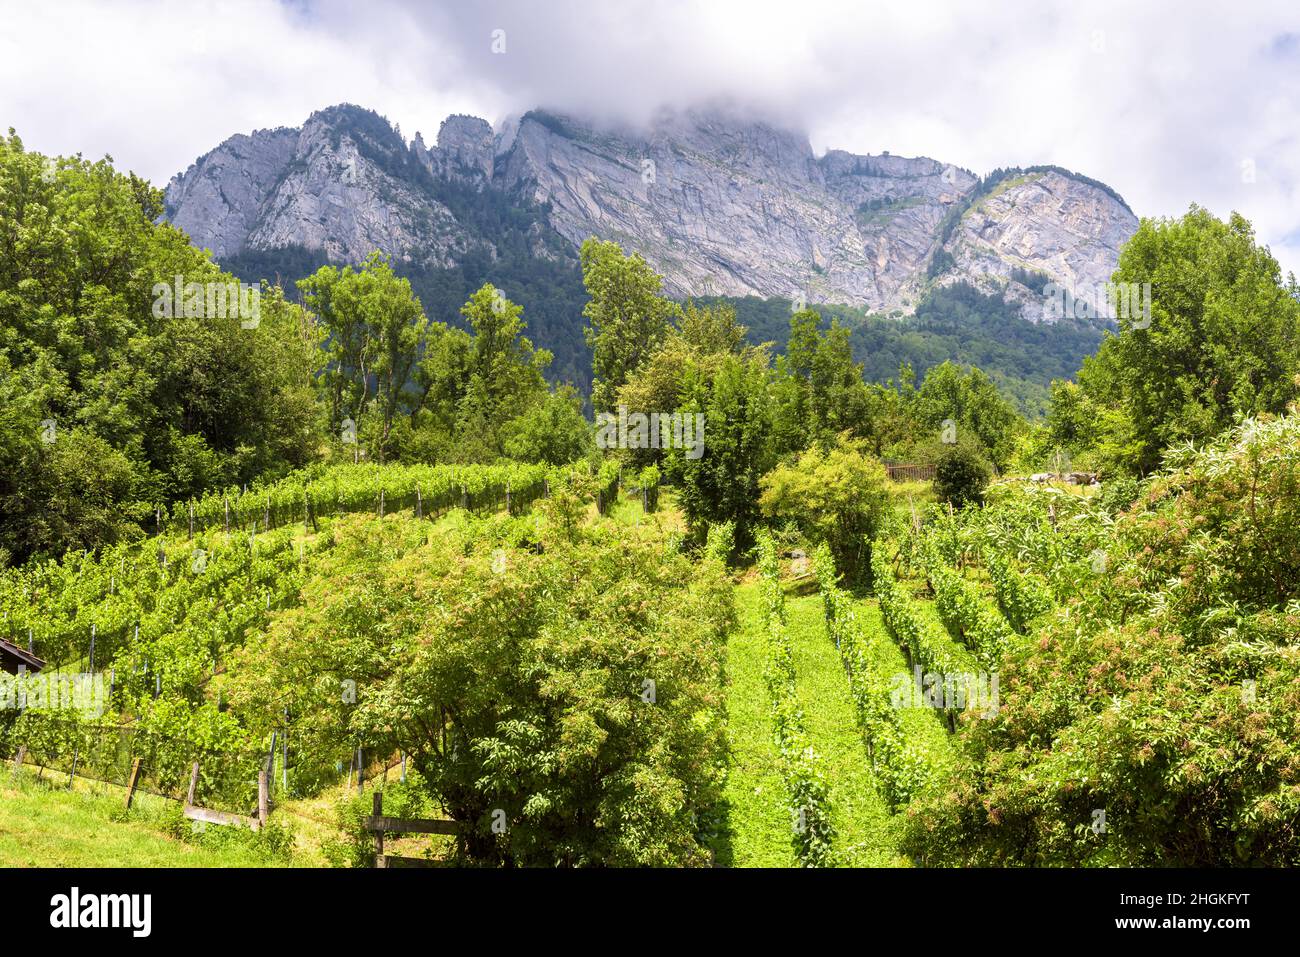 Landschaft mit Weinberg und Berg, Schweiz. Kleine Weinanbaugebiet im Sommer. Landschaftlich schöner Blick auf grüne Weinberge in der Schweizer Landschaft. Konzept von rur Stockfoto